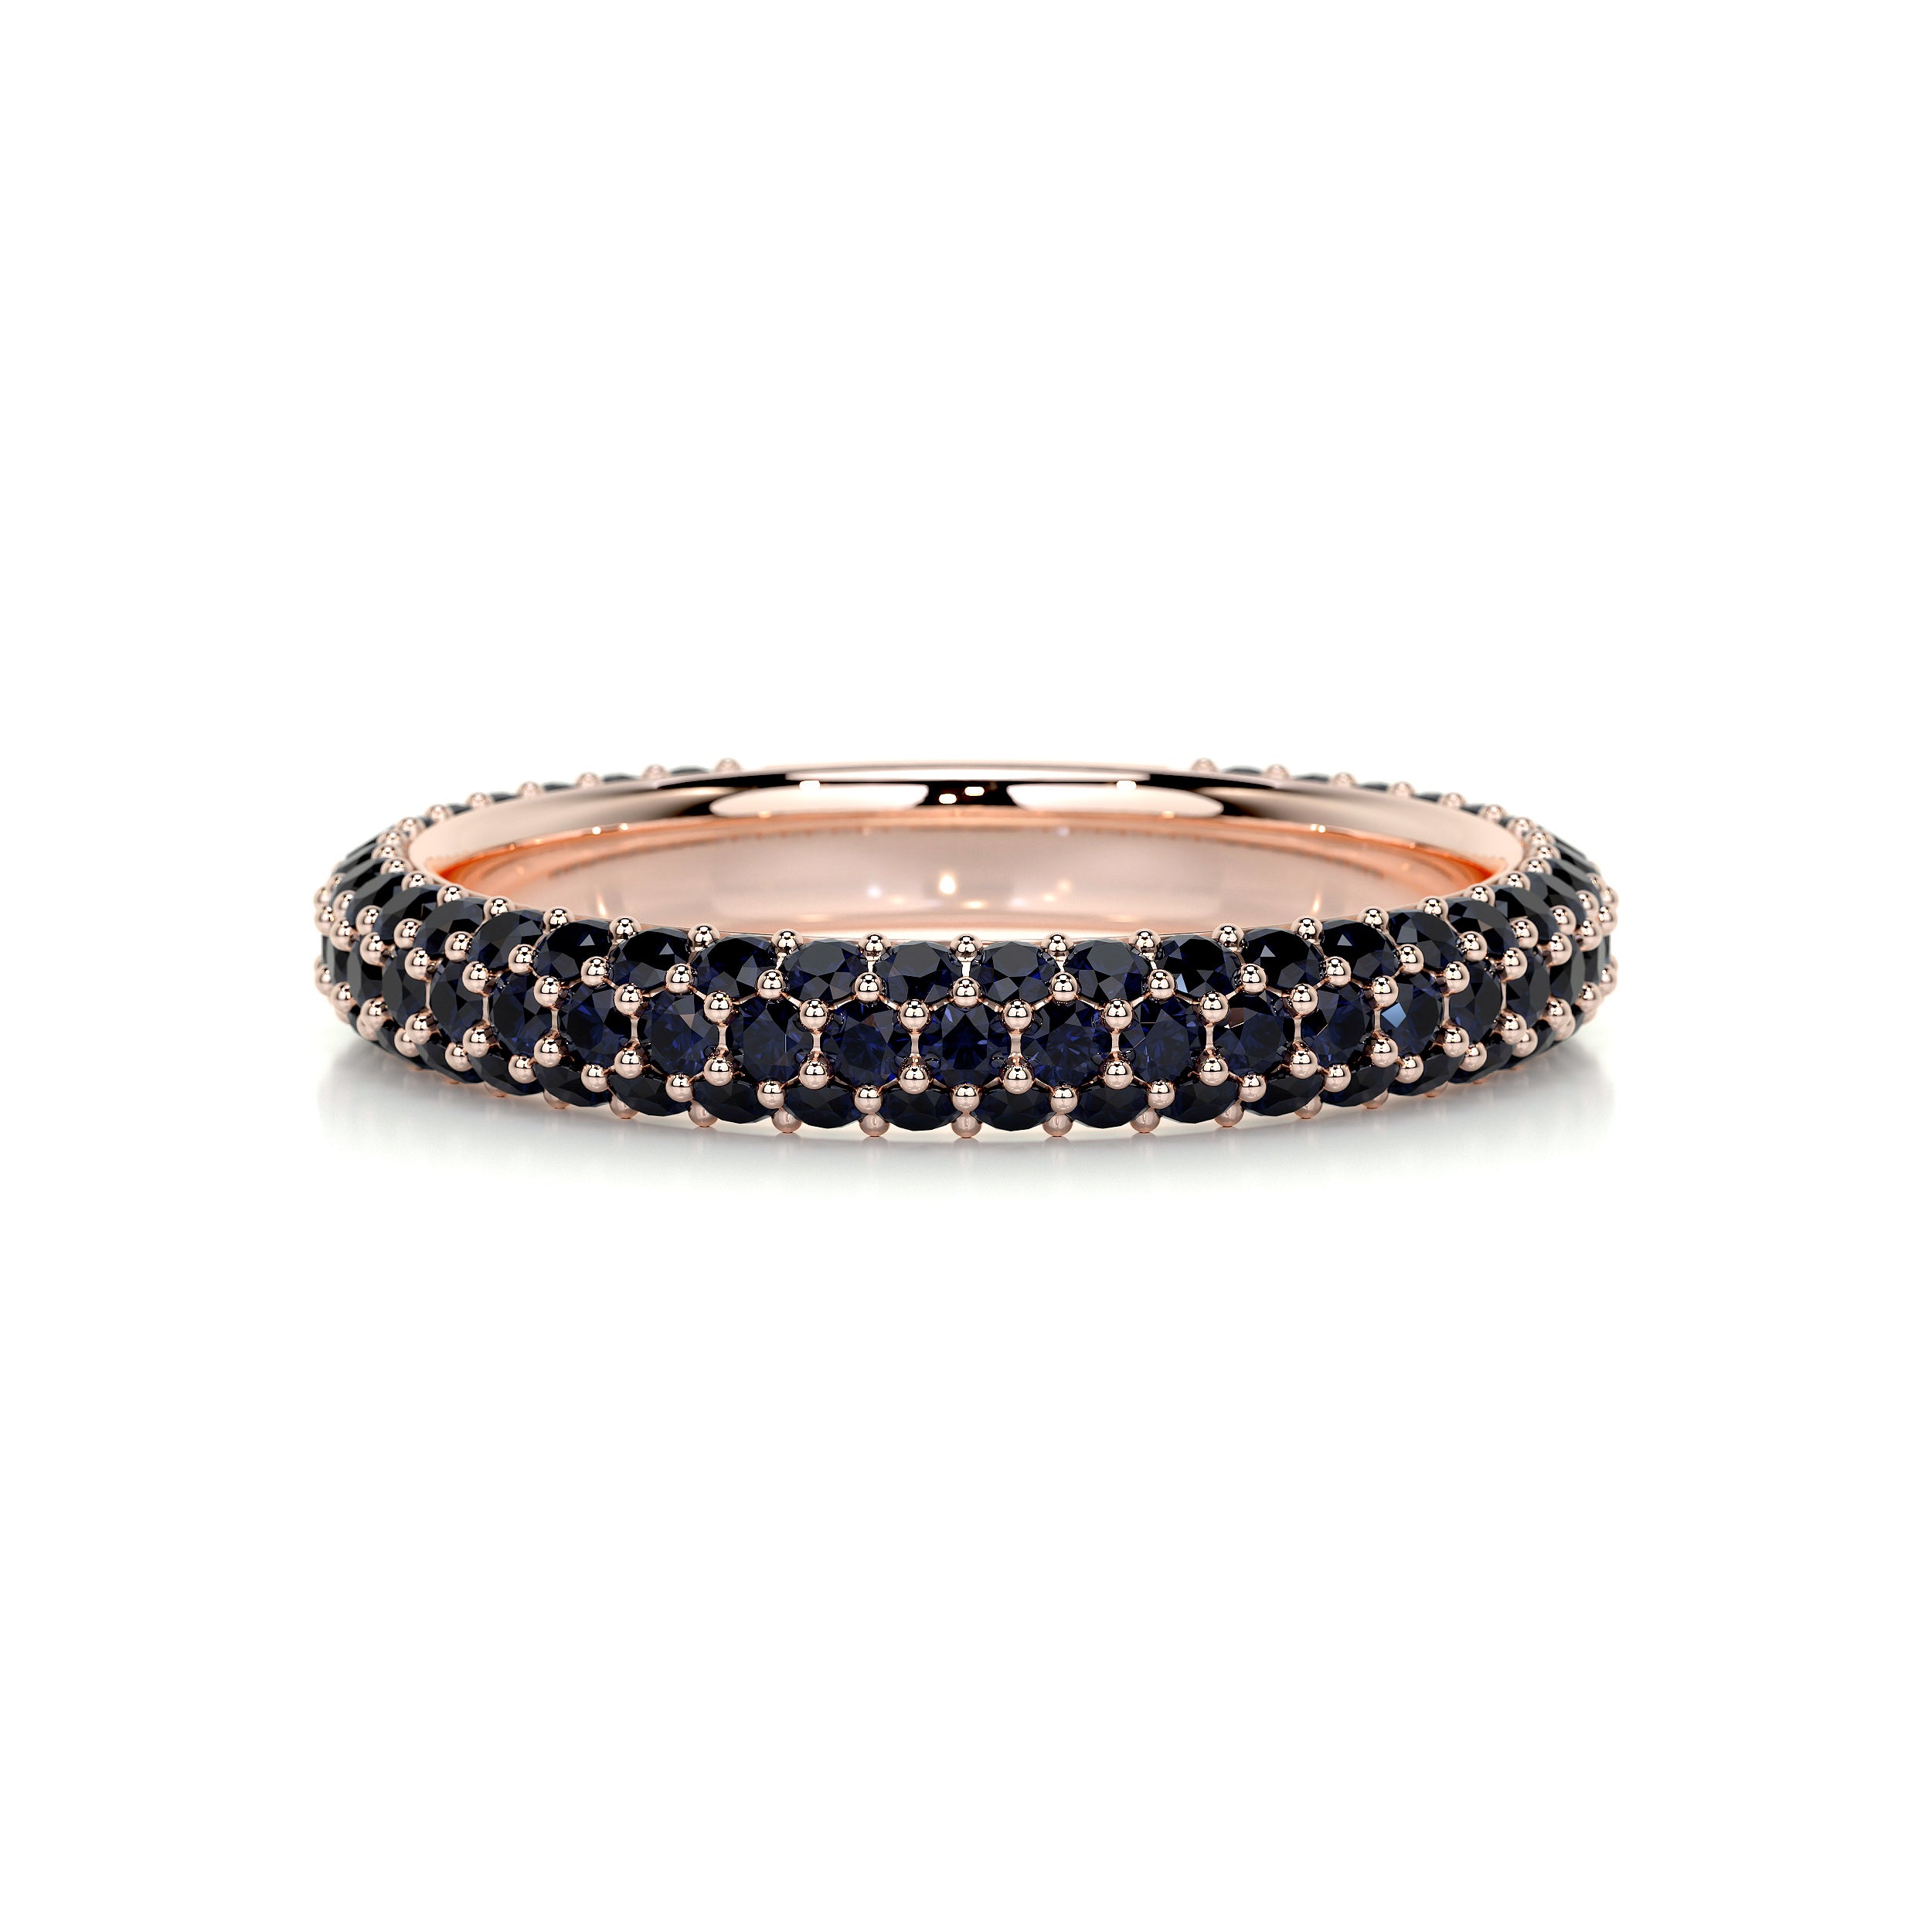 Emma Blue Gemstone Wedding Ring   (1.25 Carat) -14K Rose Gold